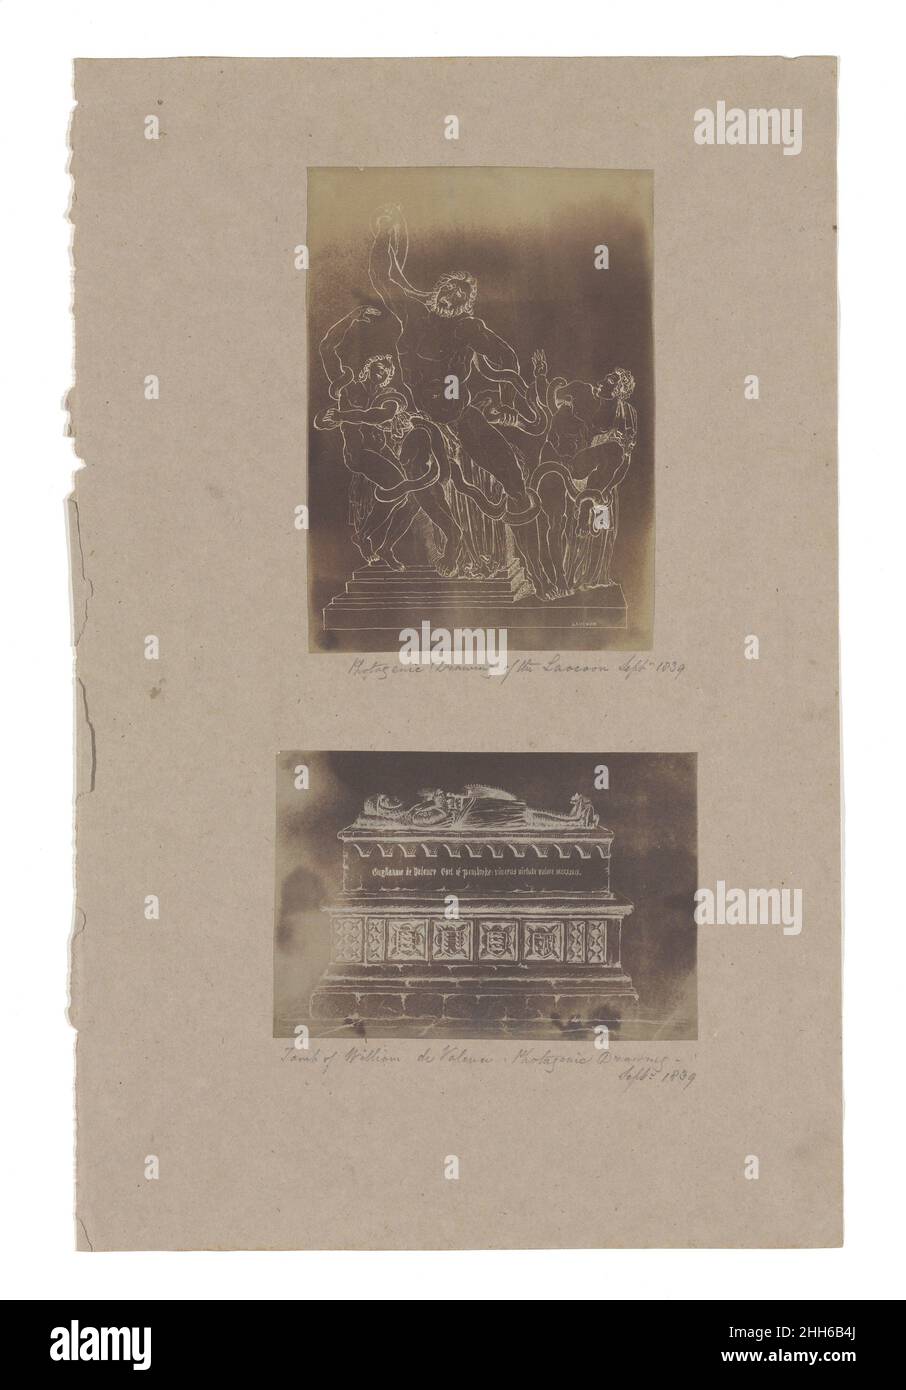 Dessin photogénique du Laocoon, septembre 1839; tombe de William de Valence 1839 inconnue.Dessin photogénique du Laocoon, septembre 1839; tombe de William de Valence 271080 Banque D'Images